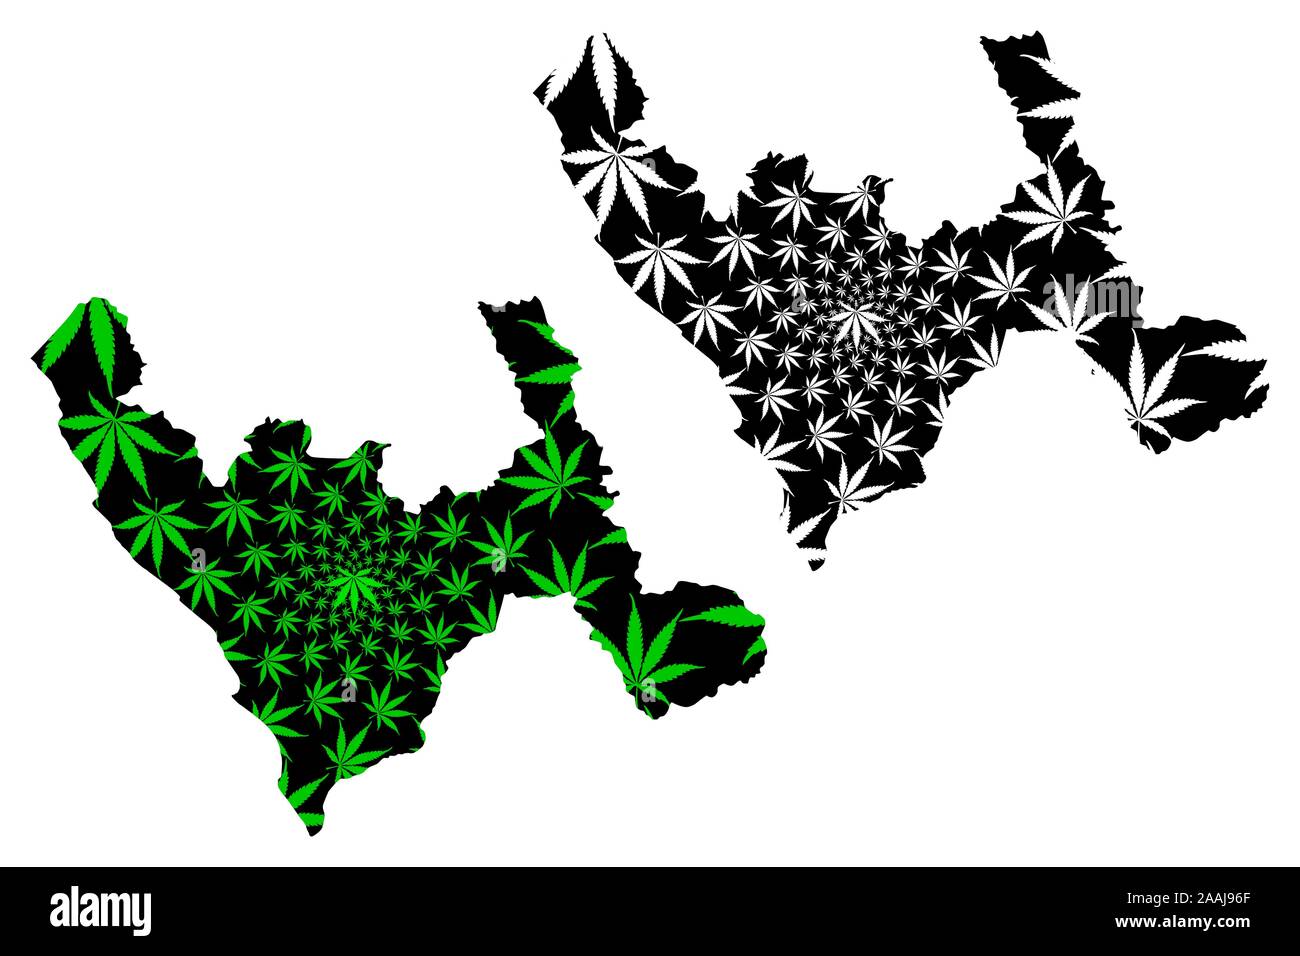 Dipartimento di La Libertad (Repubblica del Perù, regioni del Perù) mappa è progettato Cannabis leaf verde e nero, La Libertad mappa fatta di marijuana (marihu Illustrazione Vettoriale